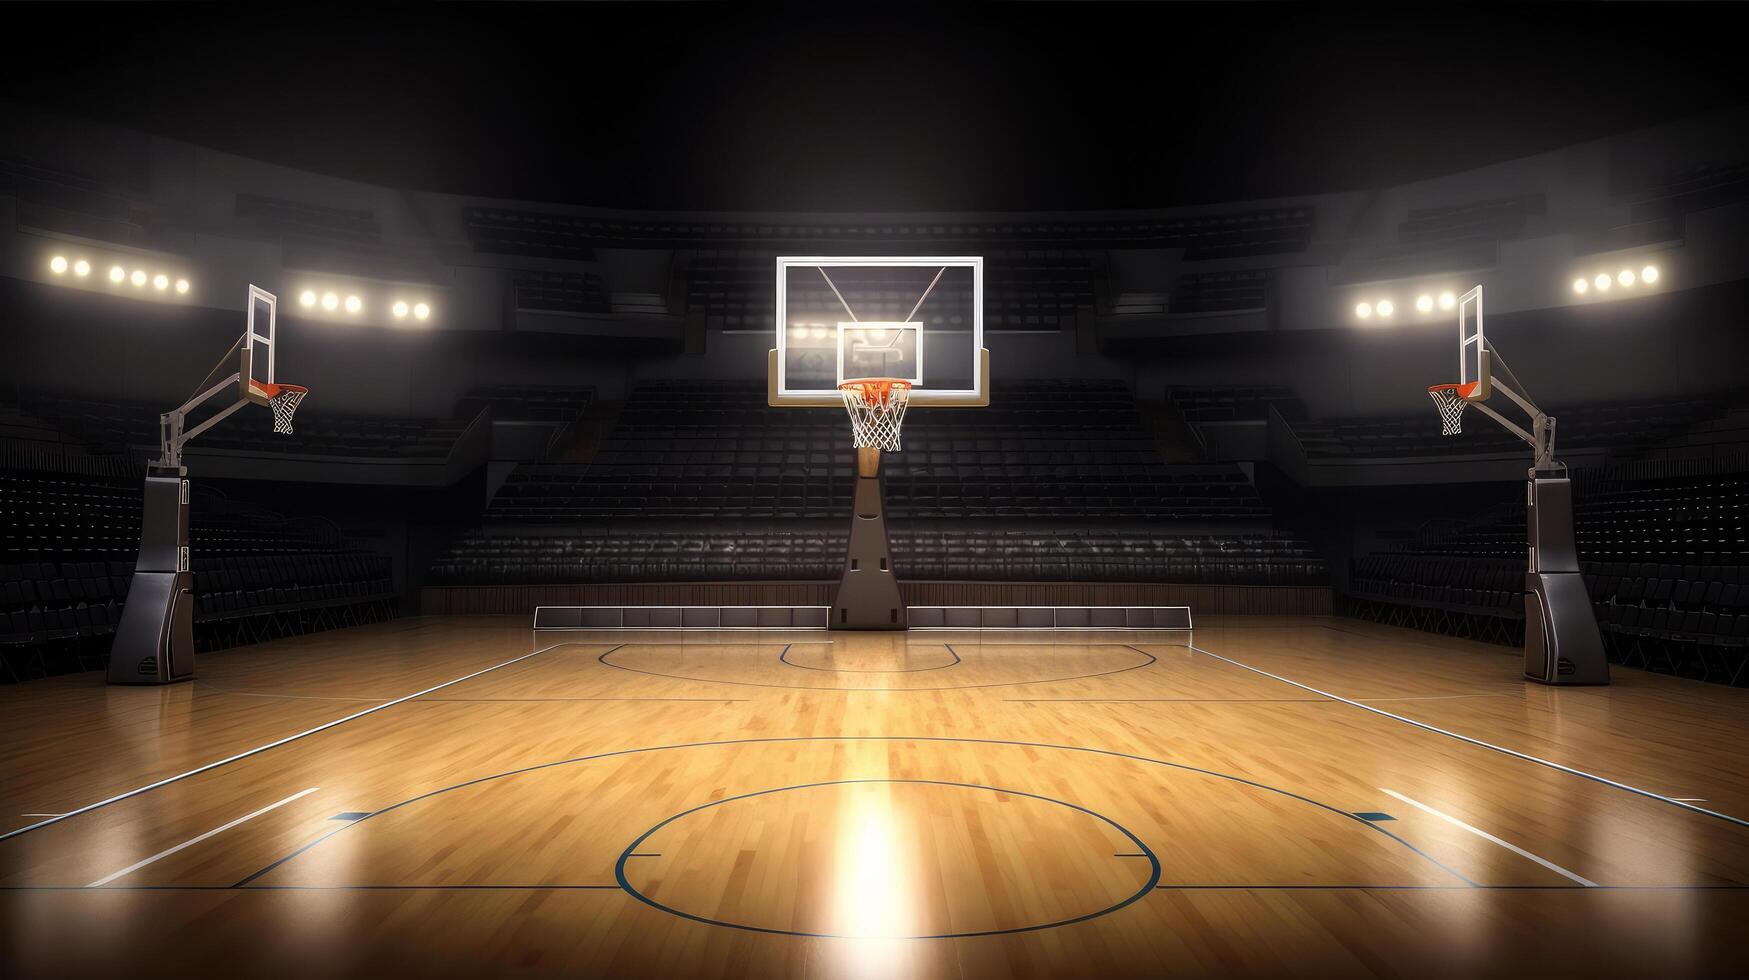 Basketball background. Illustration photo